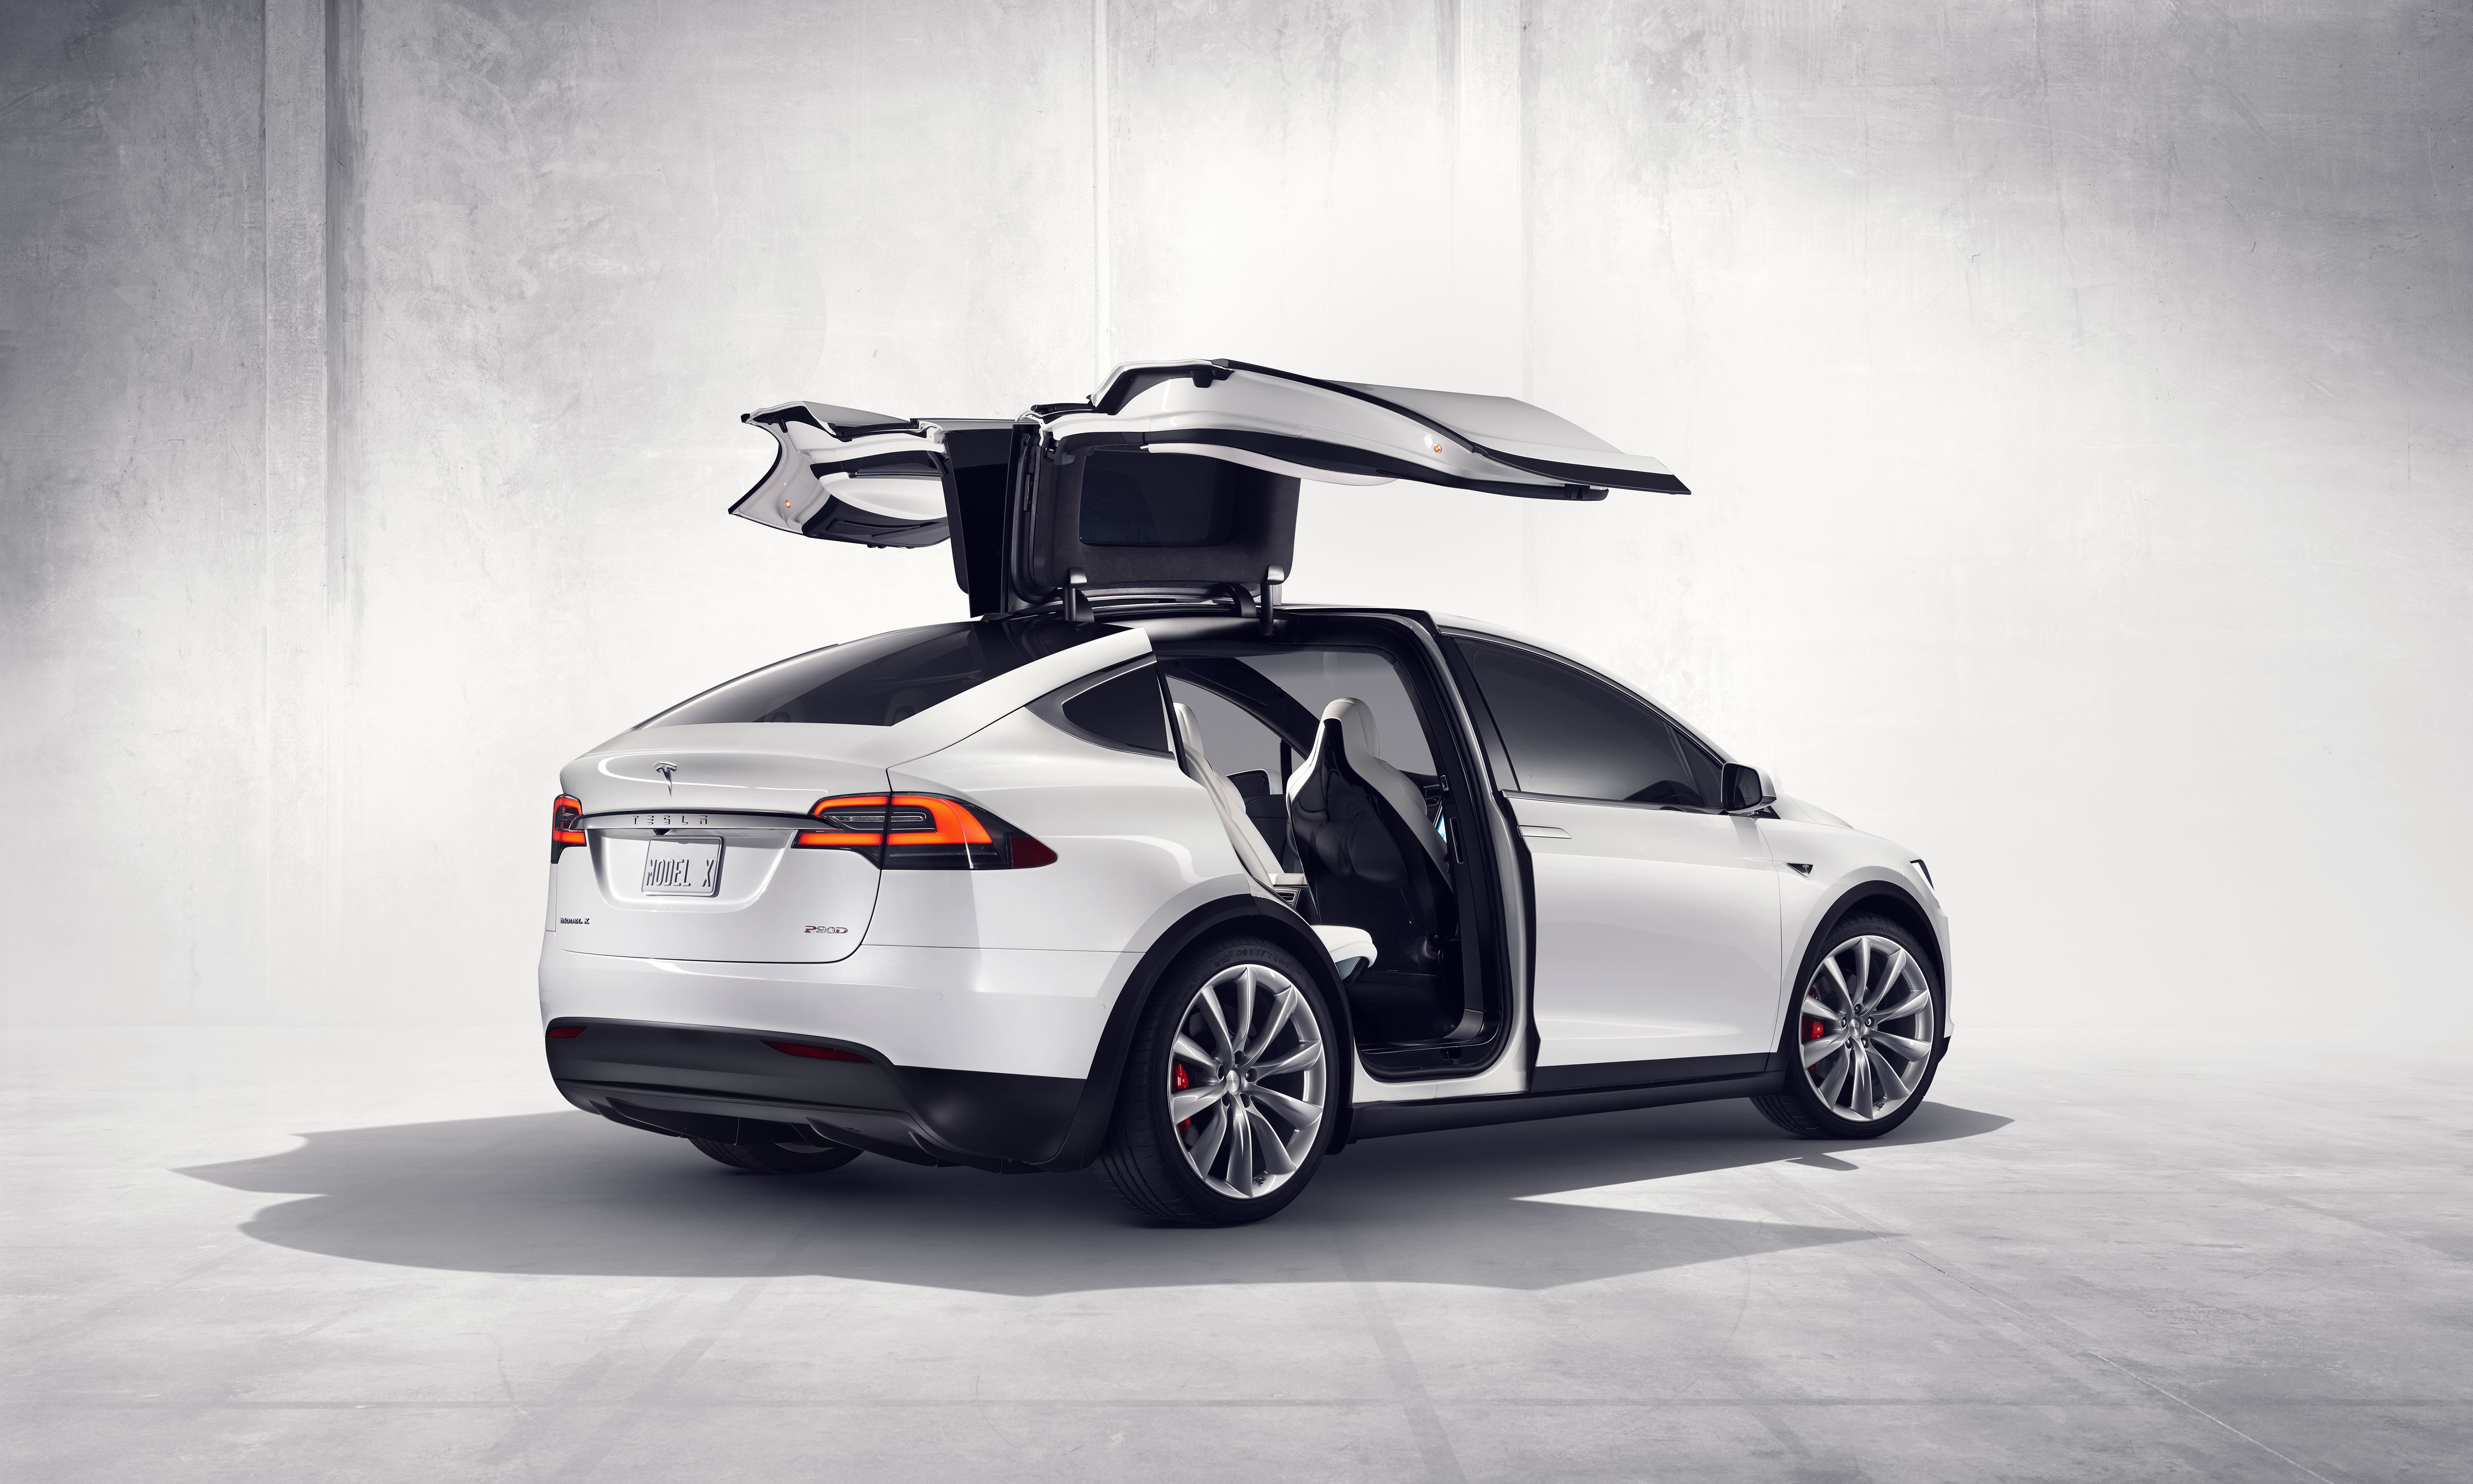 les portes en aile de faucons ouvertes du Tesla Model X en blanc